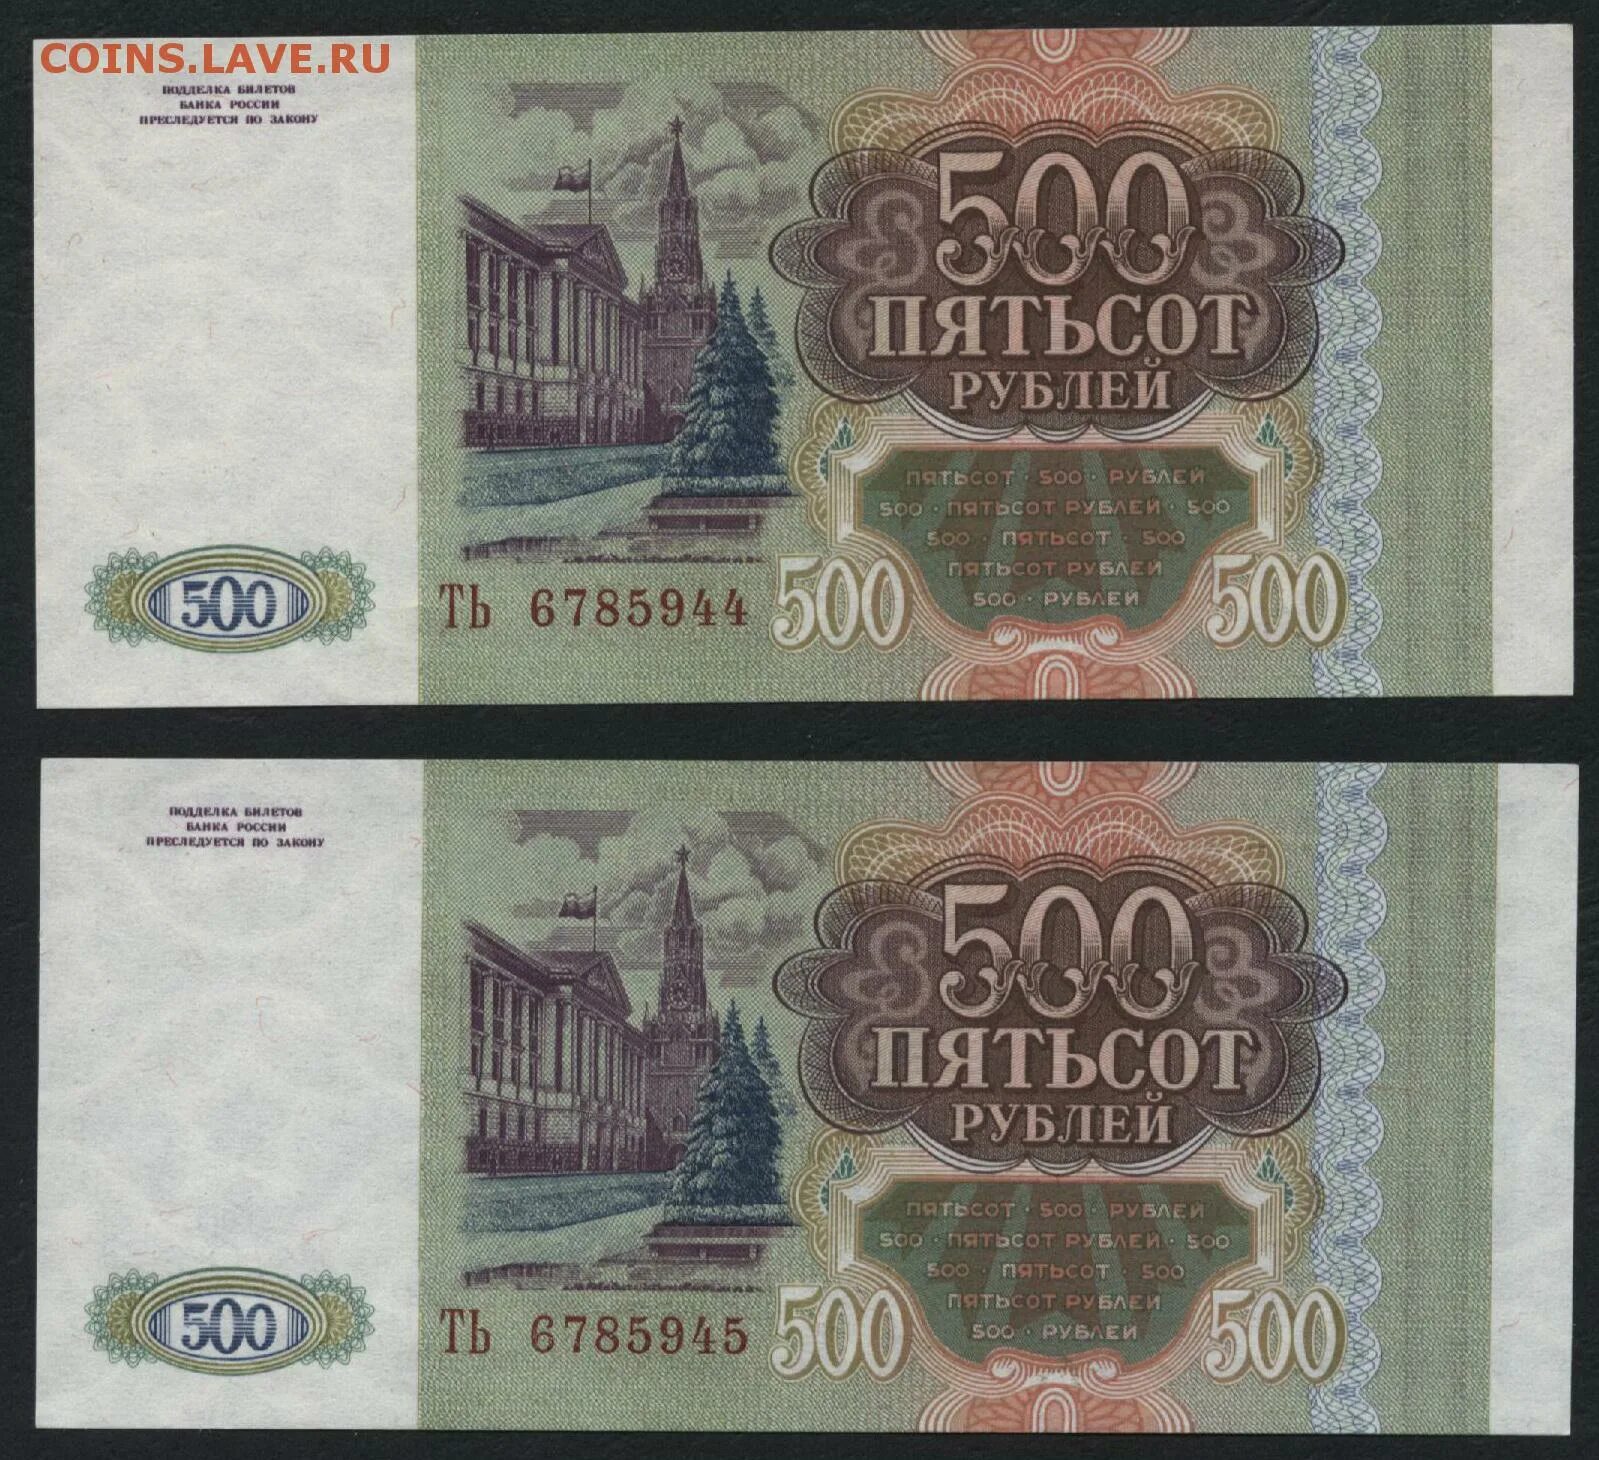 Две 500 в рублях. 500 Рублей. 500 Рублей 1993. Пятьсот рублей 1993. 500 Рублей 1993 года.